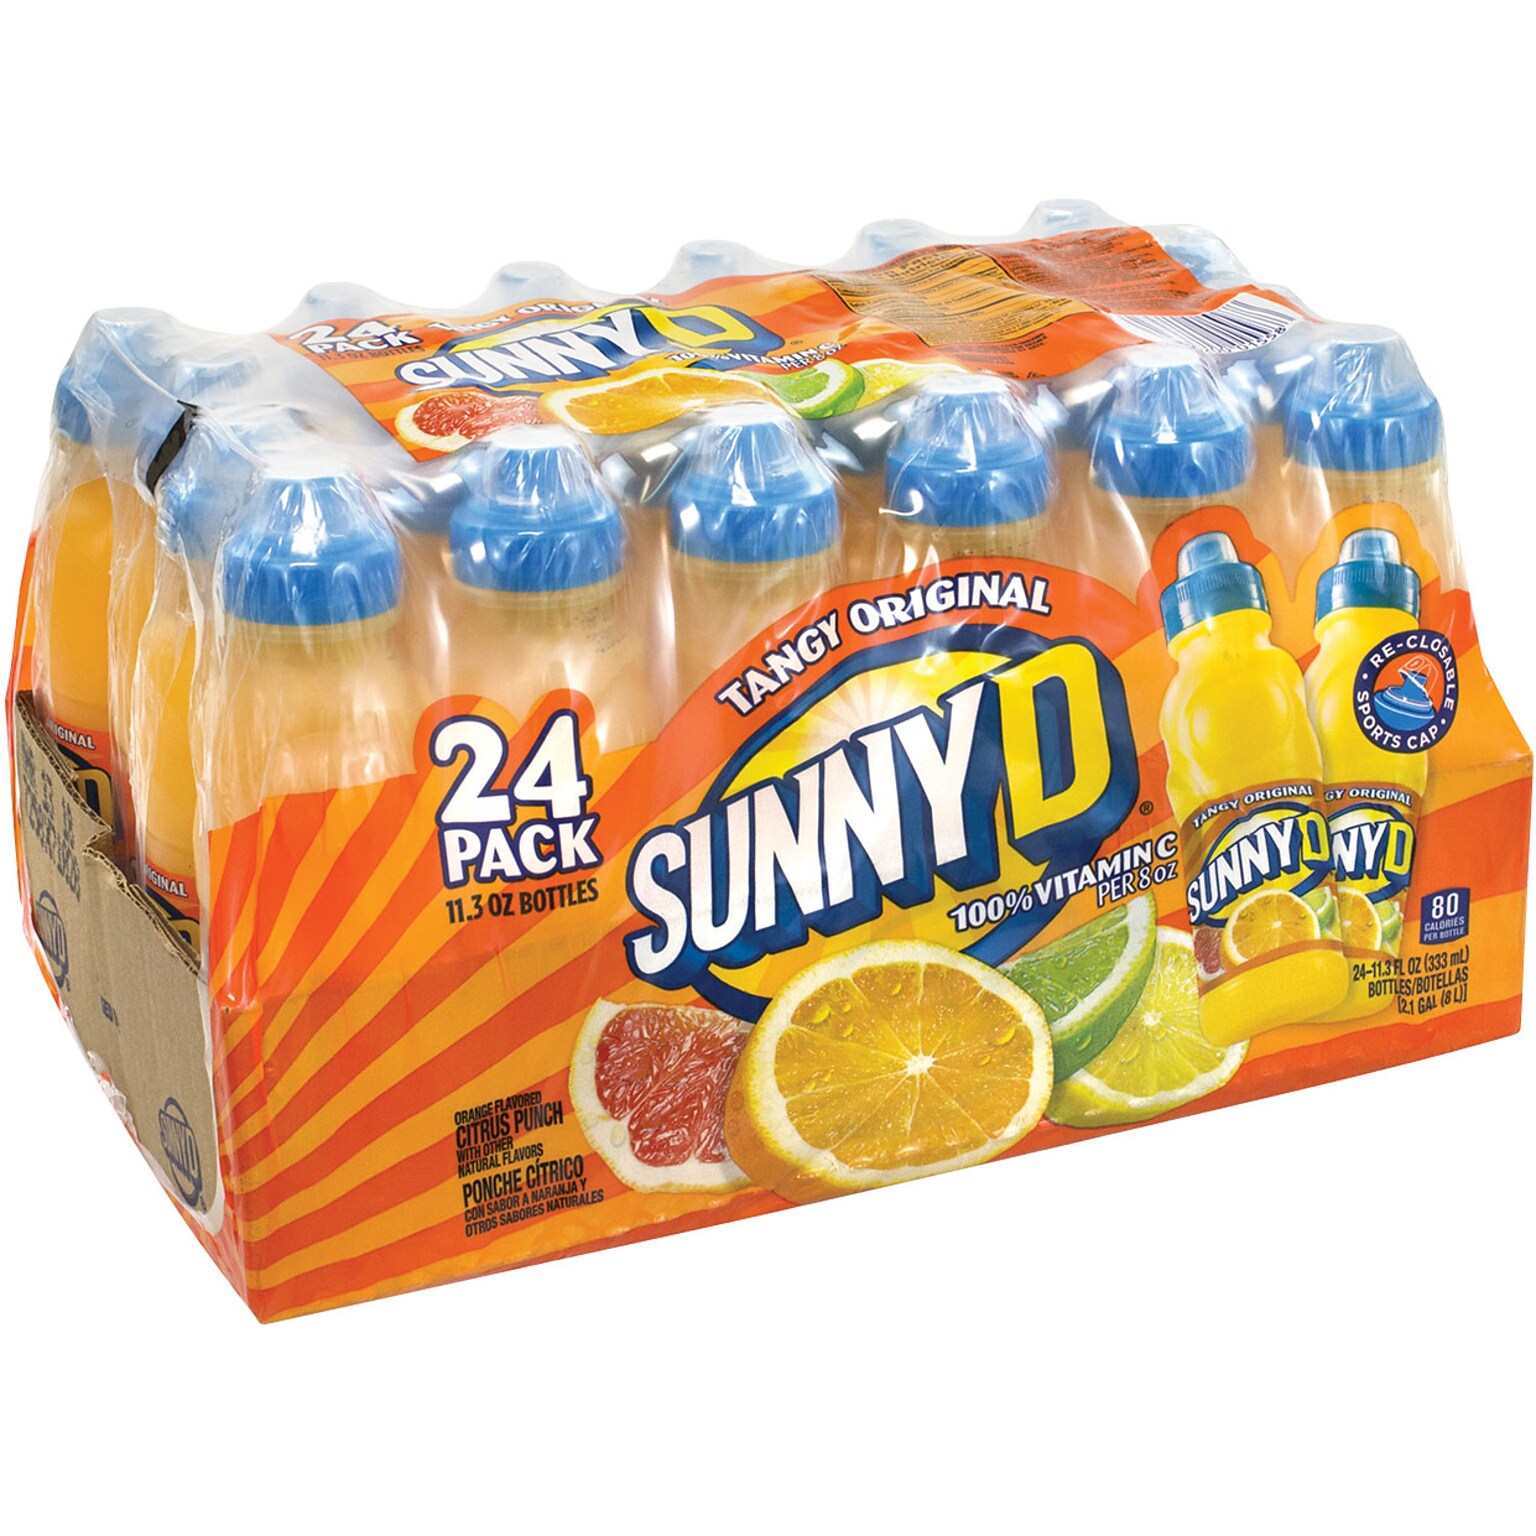 Sunny D Tangy Original, 11.3 Fl oz. 24/Pack (209-02554)